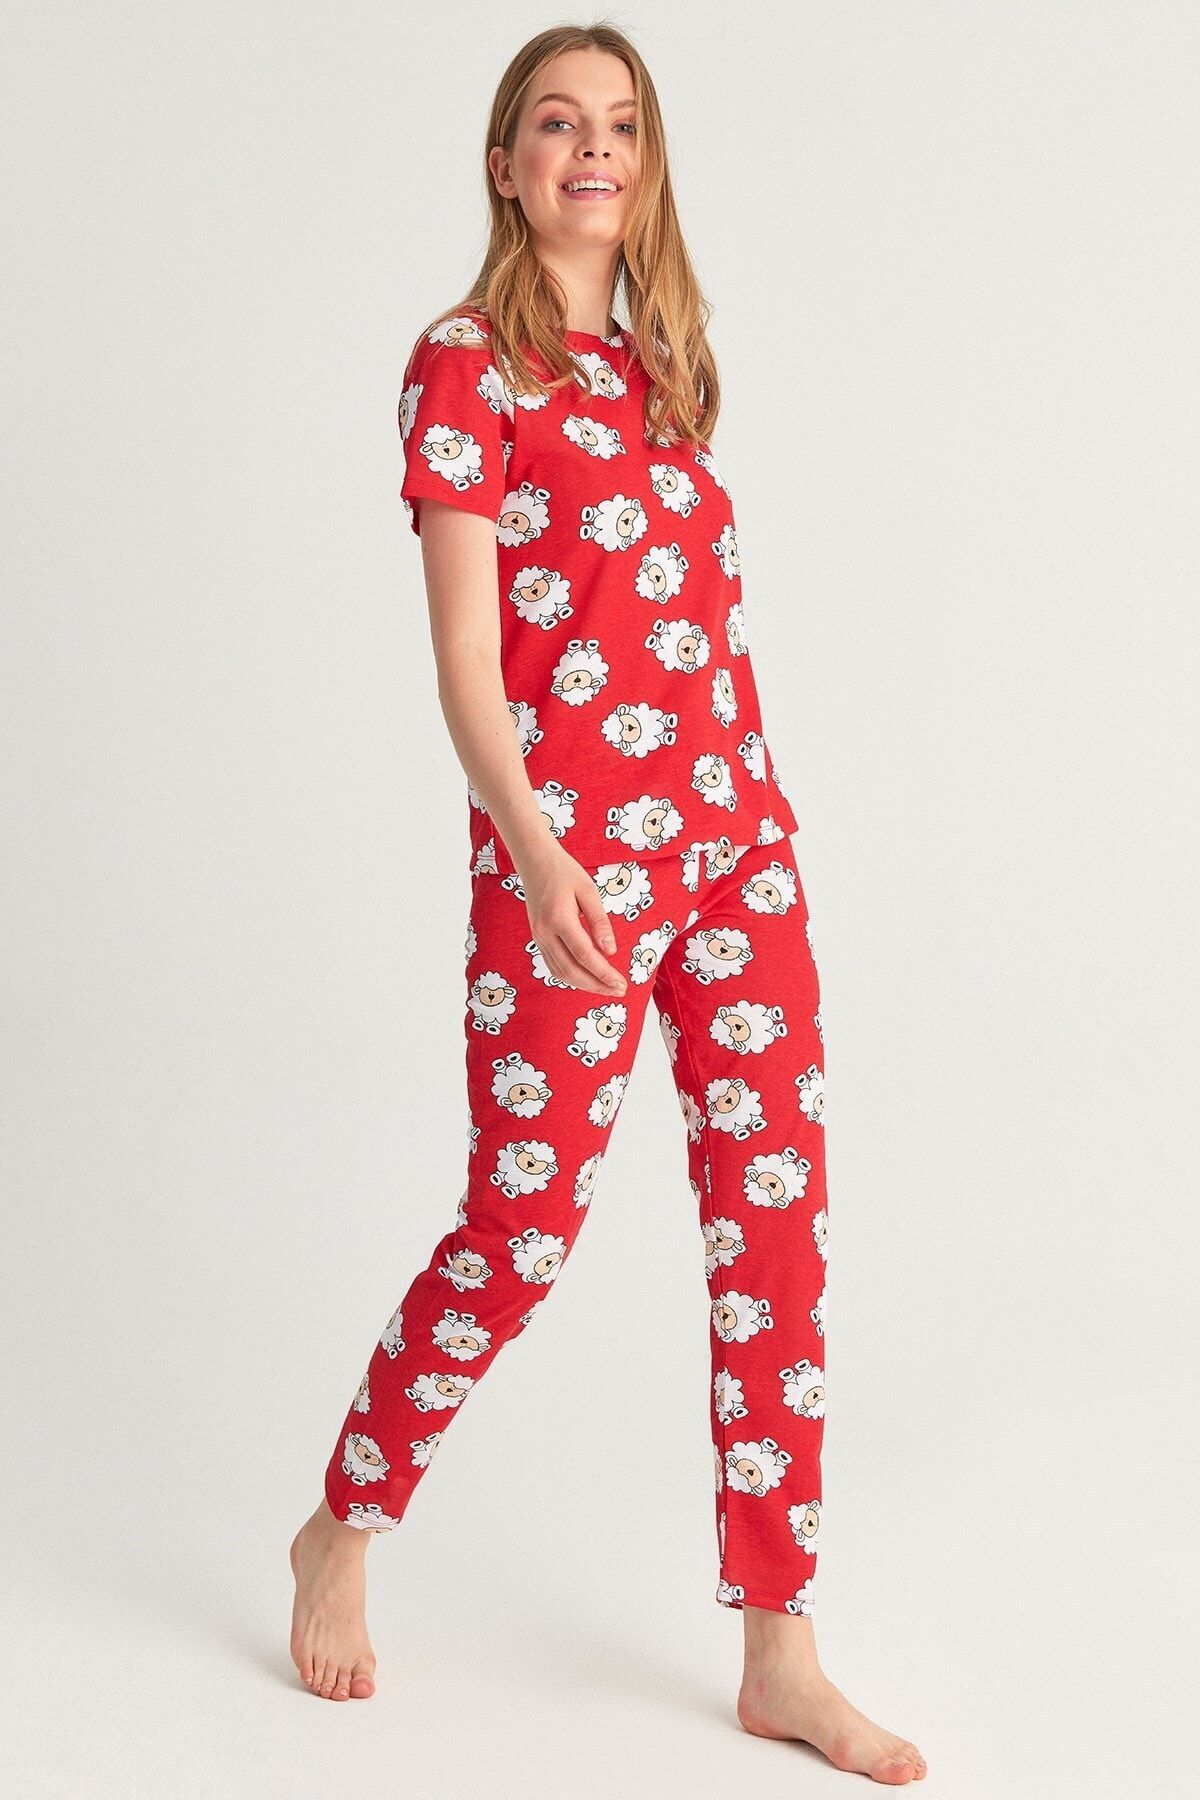 Fullamoda Kadın Kuzu Desenli Kırmızı Pijama Takımı